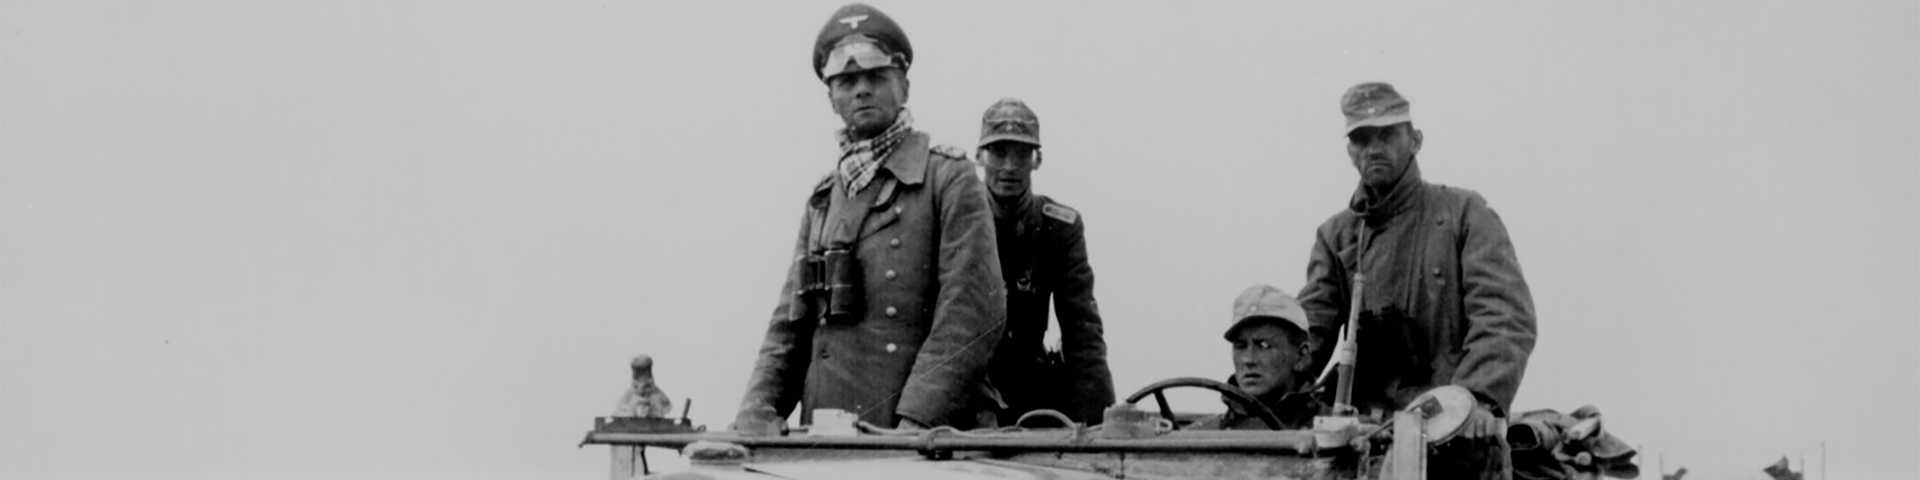 Бочица цијанида за фелдмаршала Ромела: Самоубиство по Хитлеровом наређењу